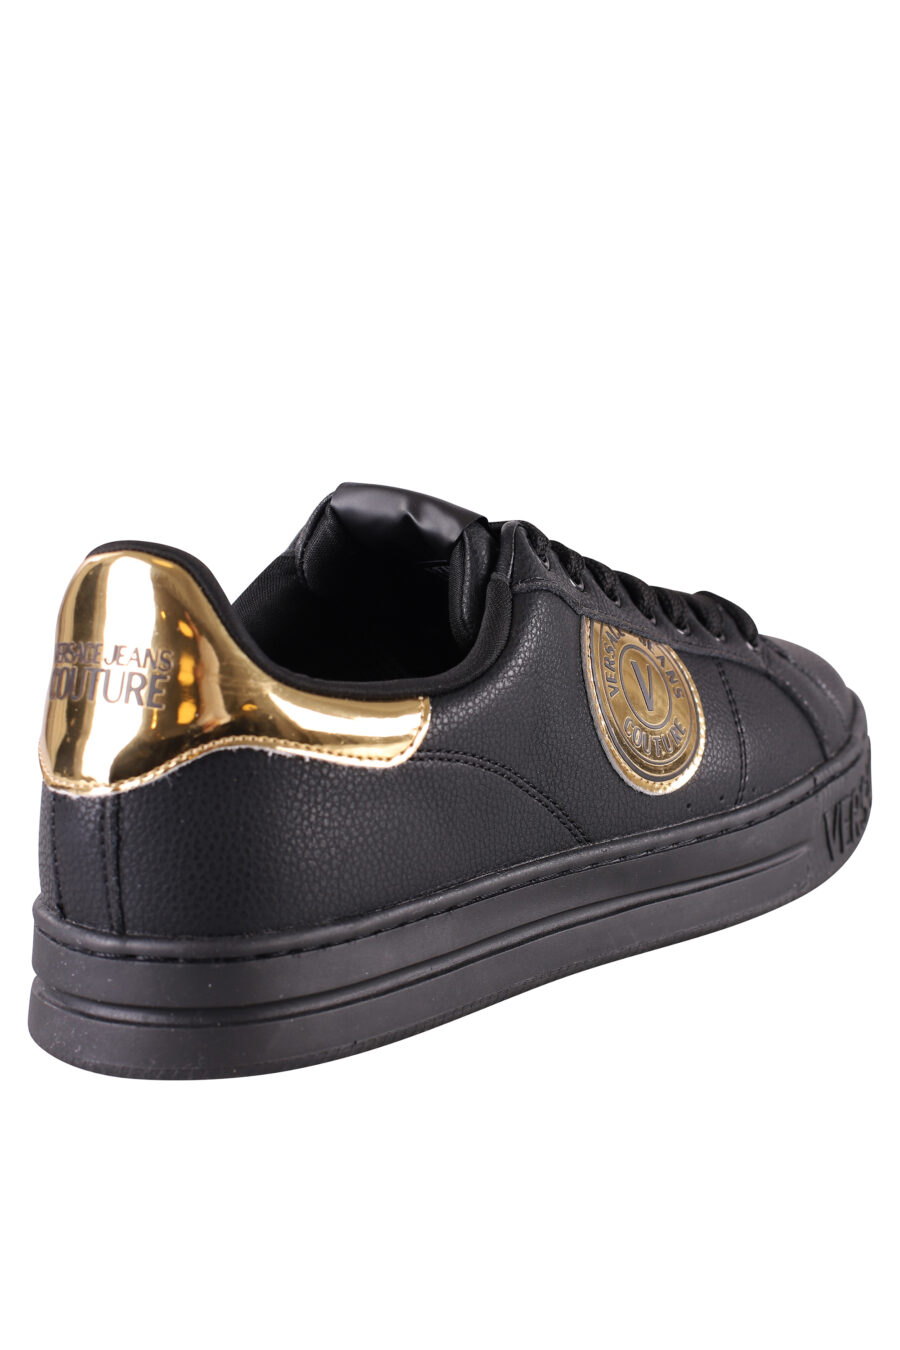 Zapatillas negras y doradas con logo semicirculo - IMG 8483